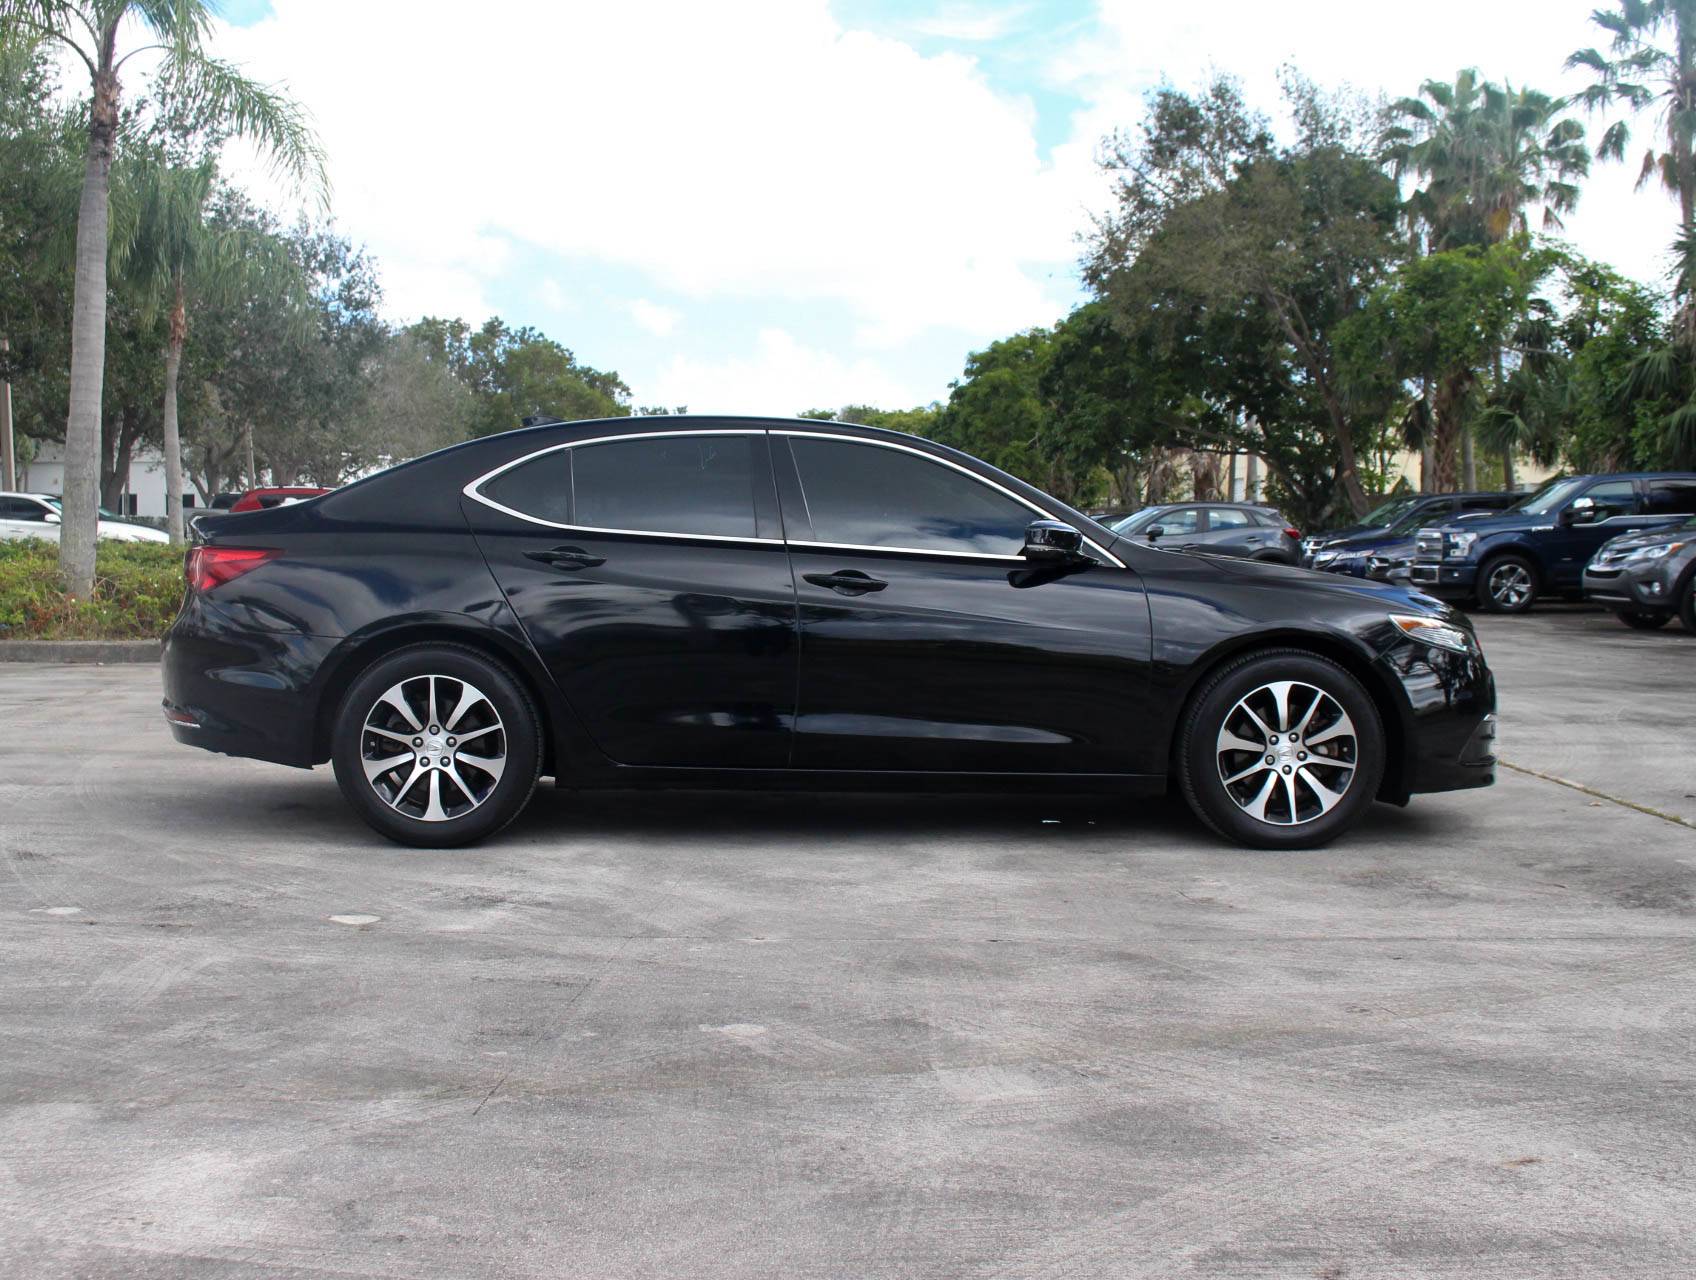 Florida Fine Cars - Used ACURA TLX 2015 MARGATE 